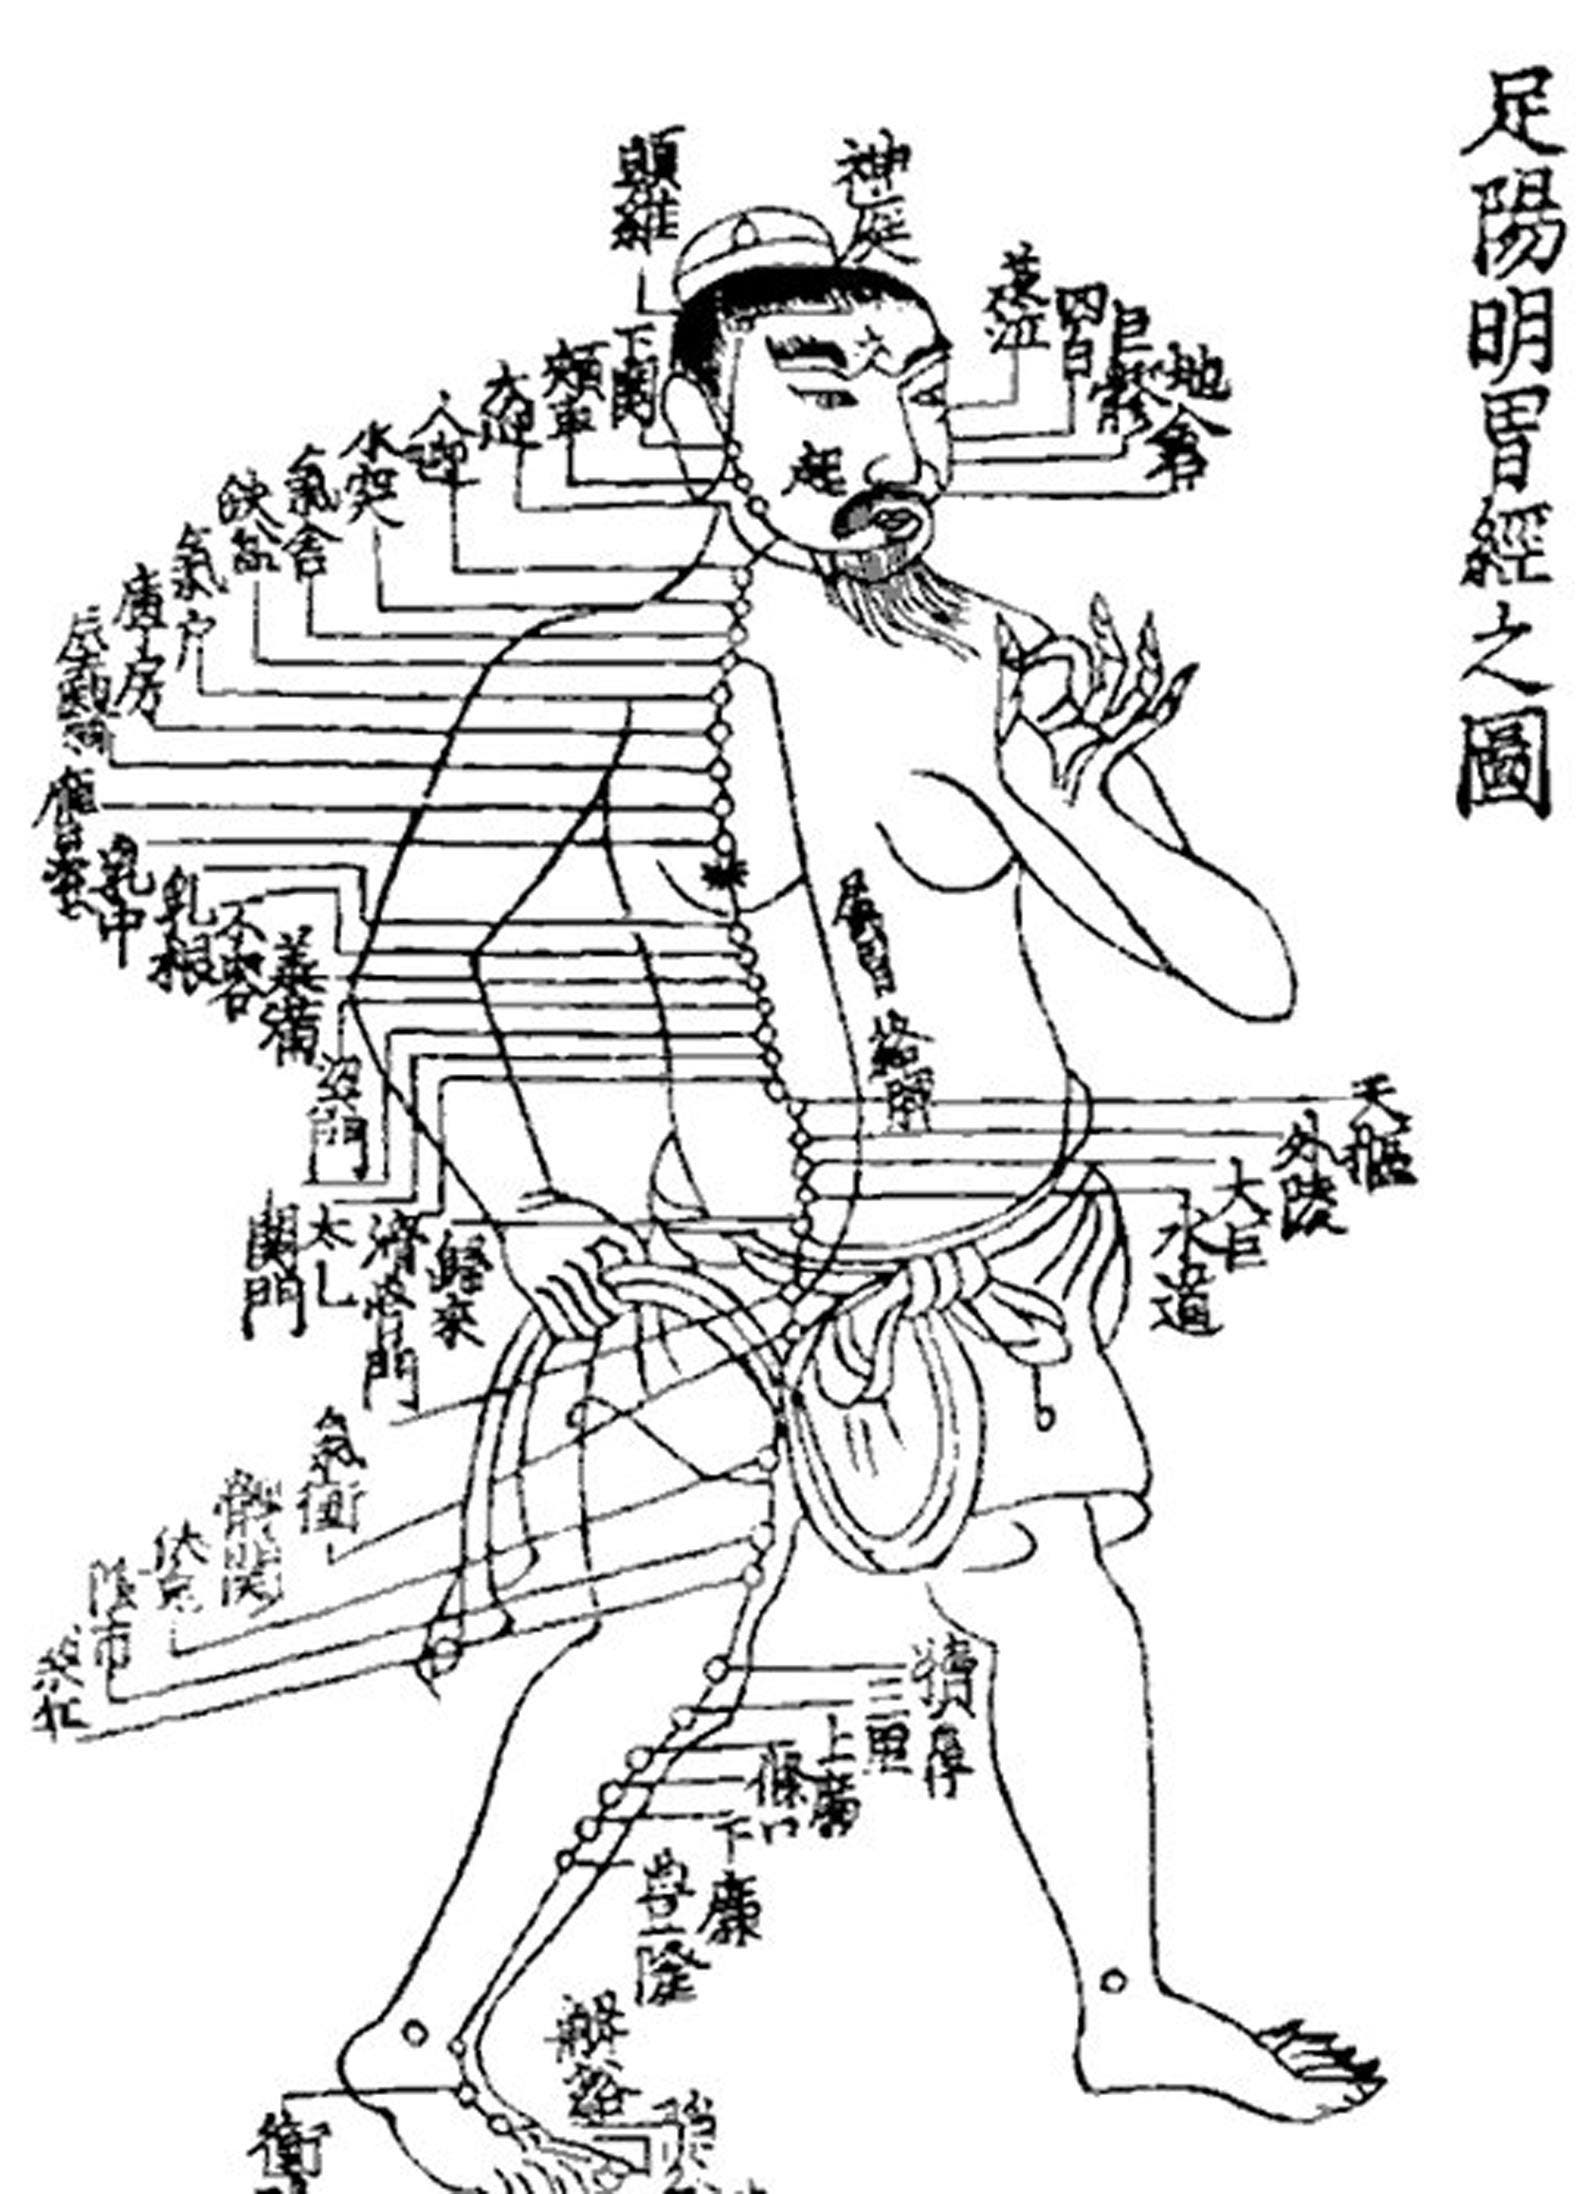 Chinesische Akupunkturkarte